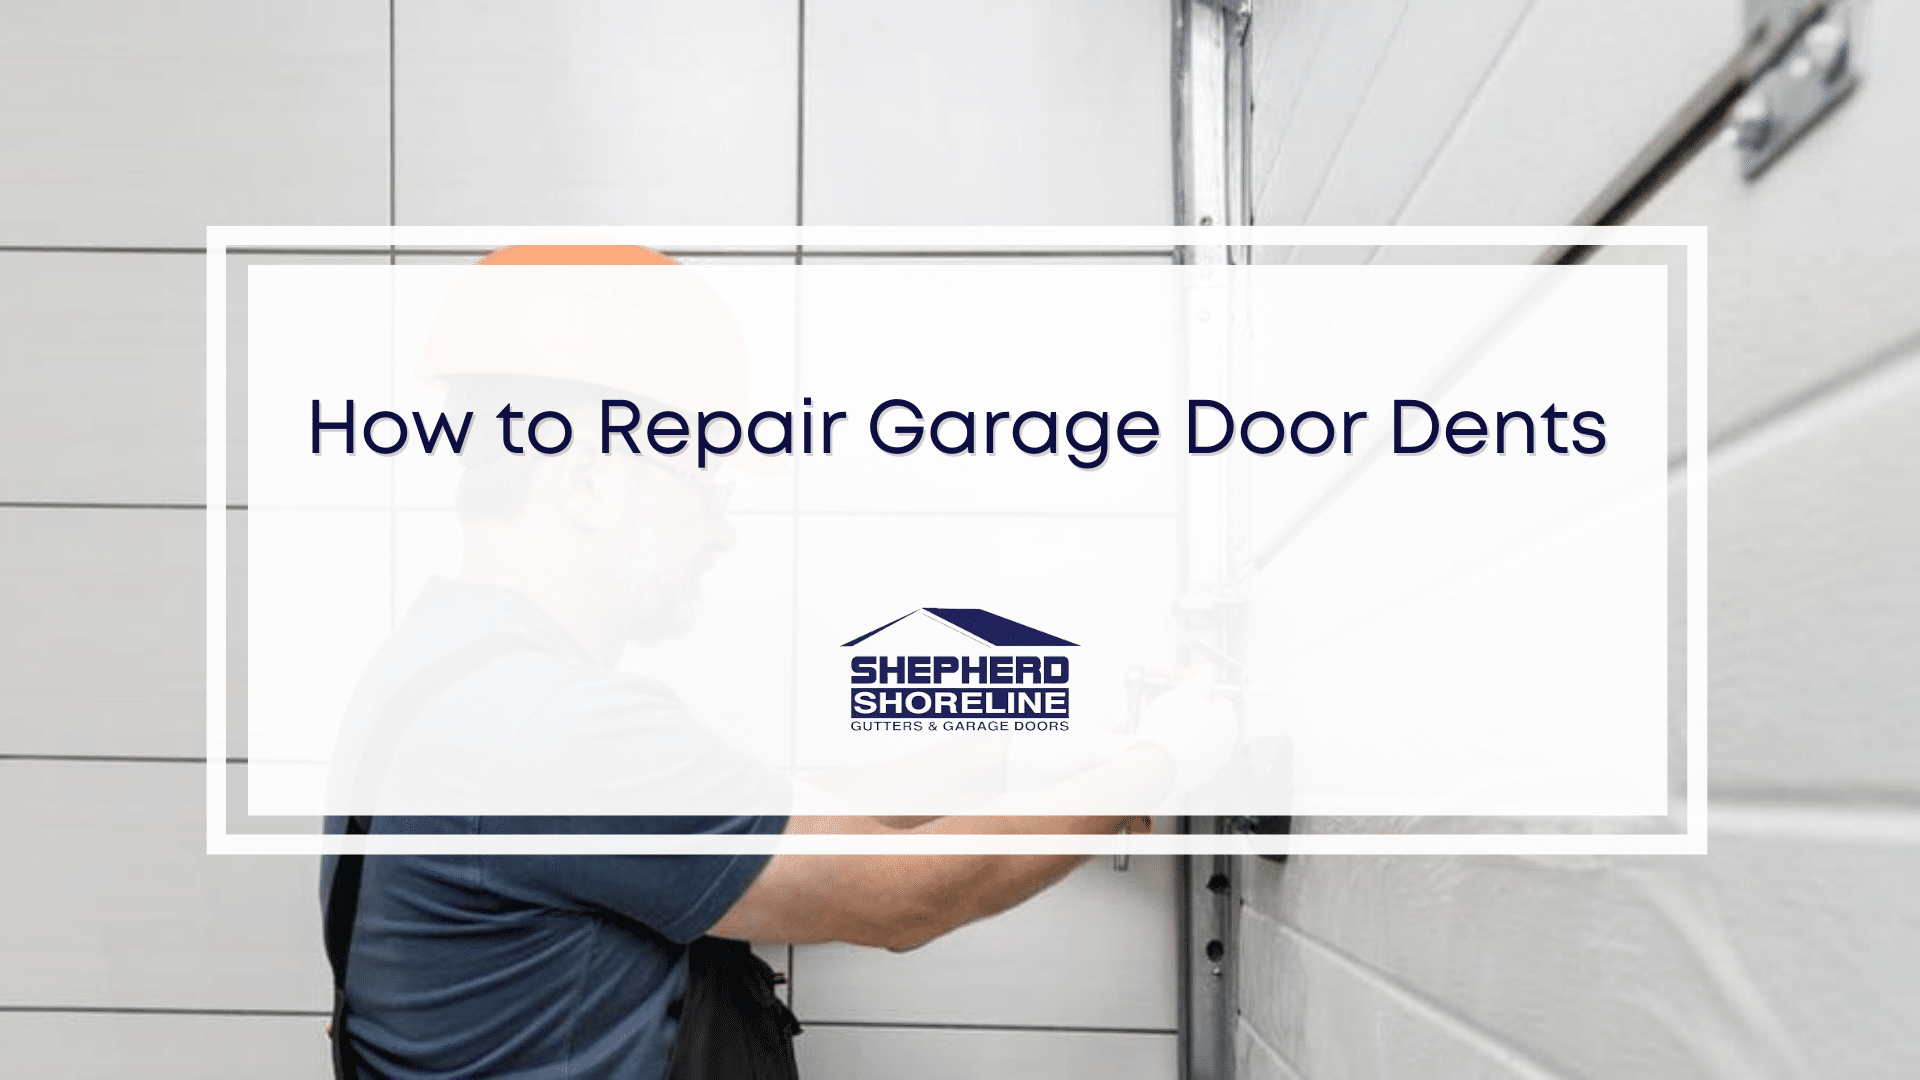 Featured image of how to repair garage door dents